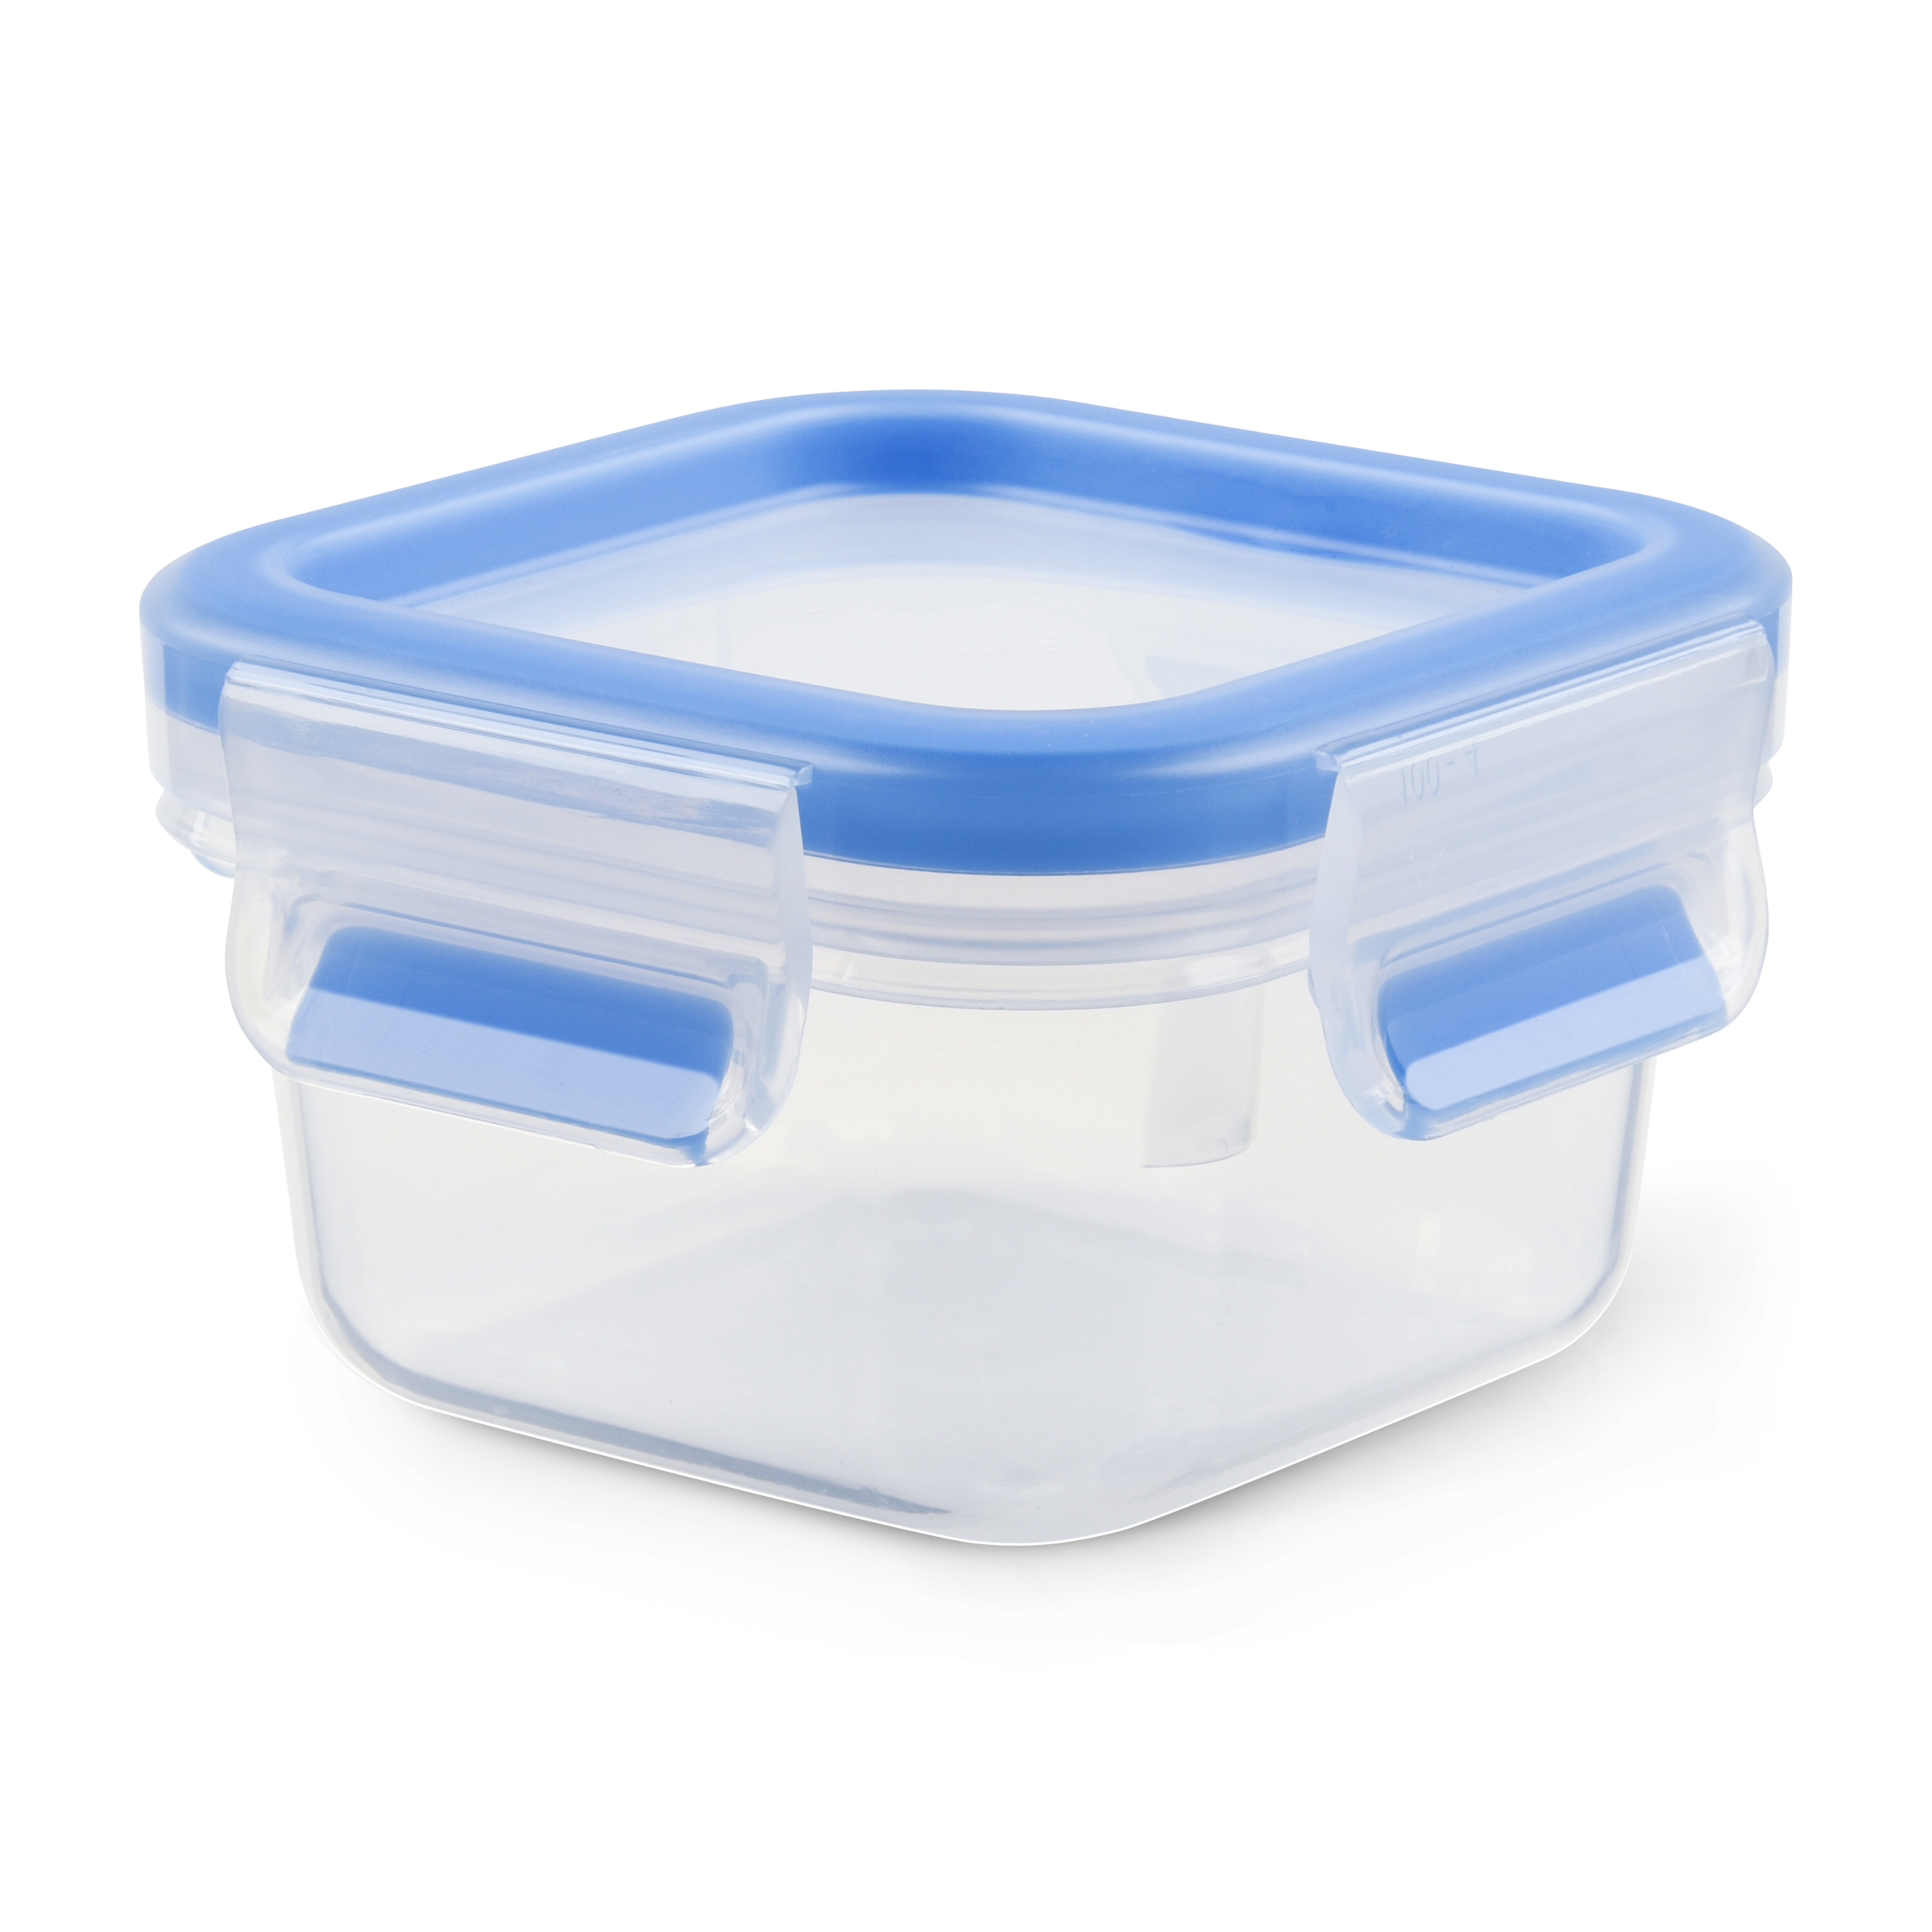 Bộ 3 hộp bảo quản thực phẩm nhựa Tefal Masterseal Fresh (200ml, 1000ml, 1100ml) - Hàng chính hãng